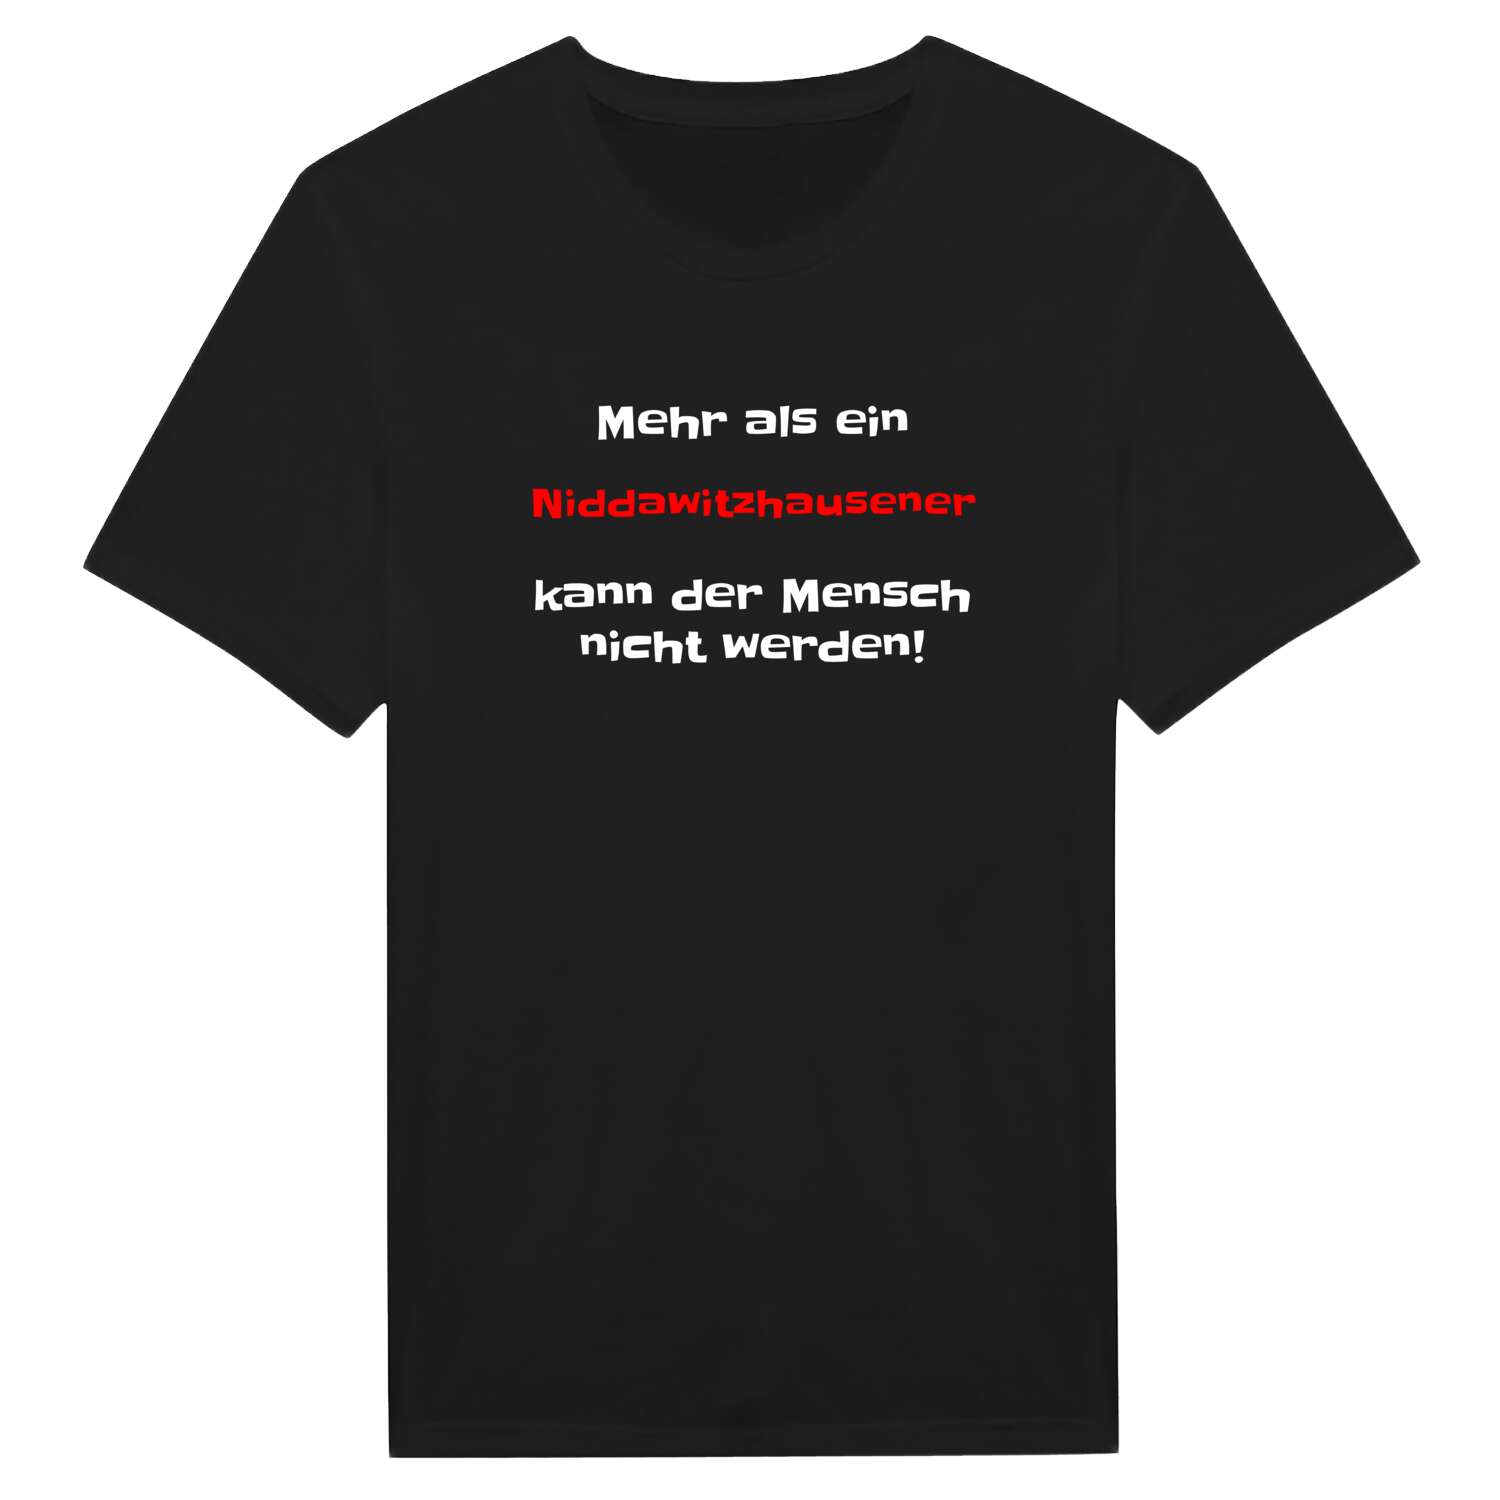 Niddawitzhausen T-Shirt »Mehr als ein«